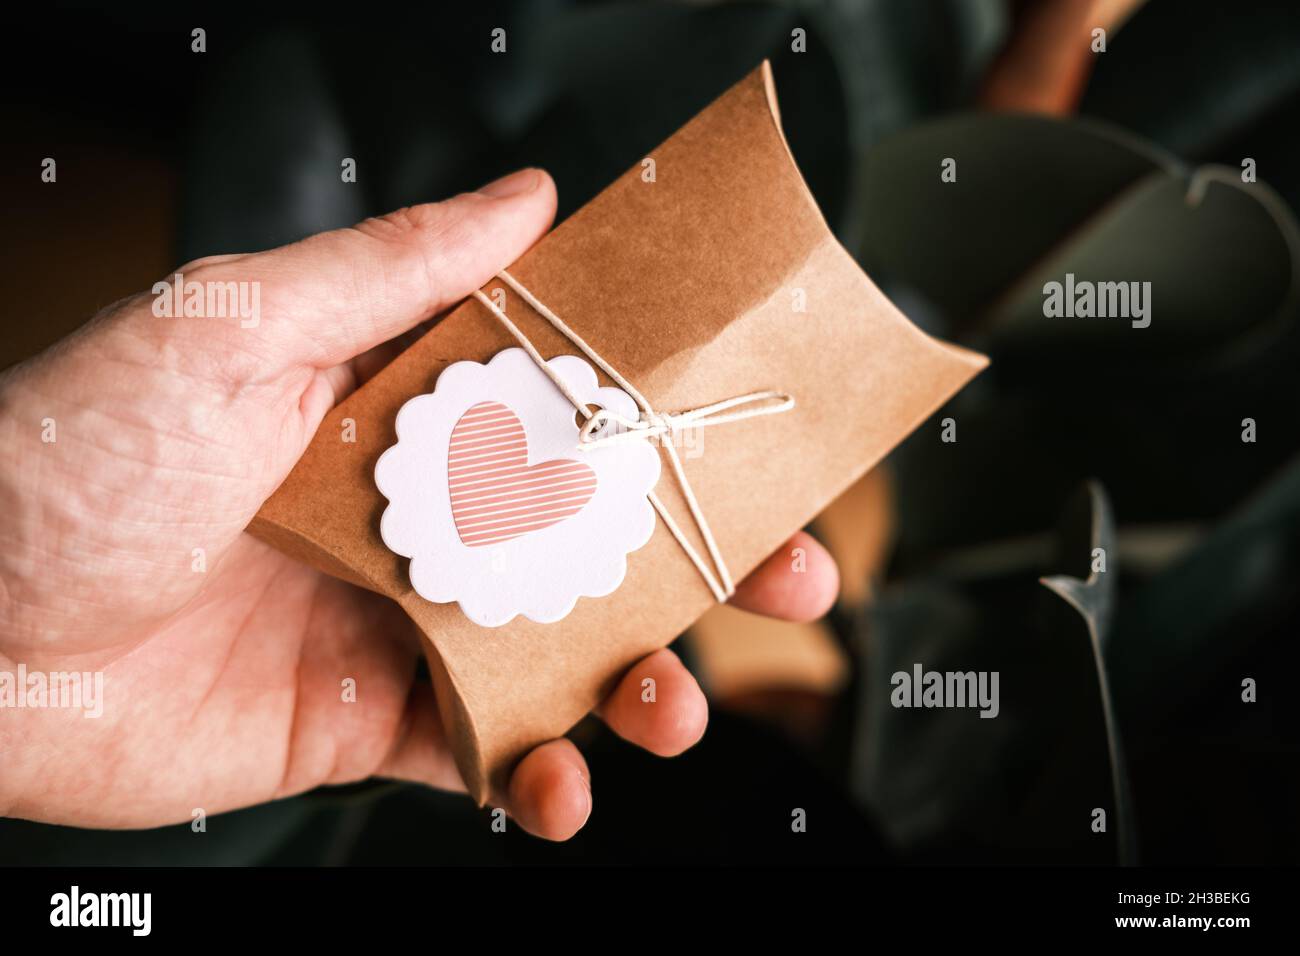 Maschio mano che tiene piccolo regalo avvolto in carta artigianale su sfondo verde scuro. Regalo fatto in casa, forma del cuore sull'etichetta del regalo. Confezione regalo sostenibile. Foto Stock